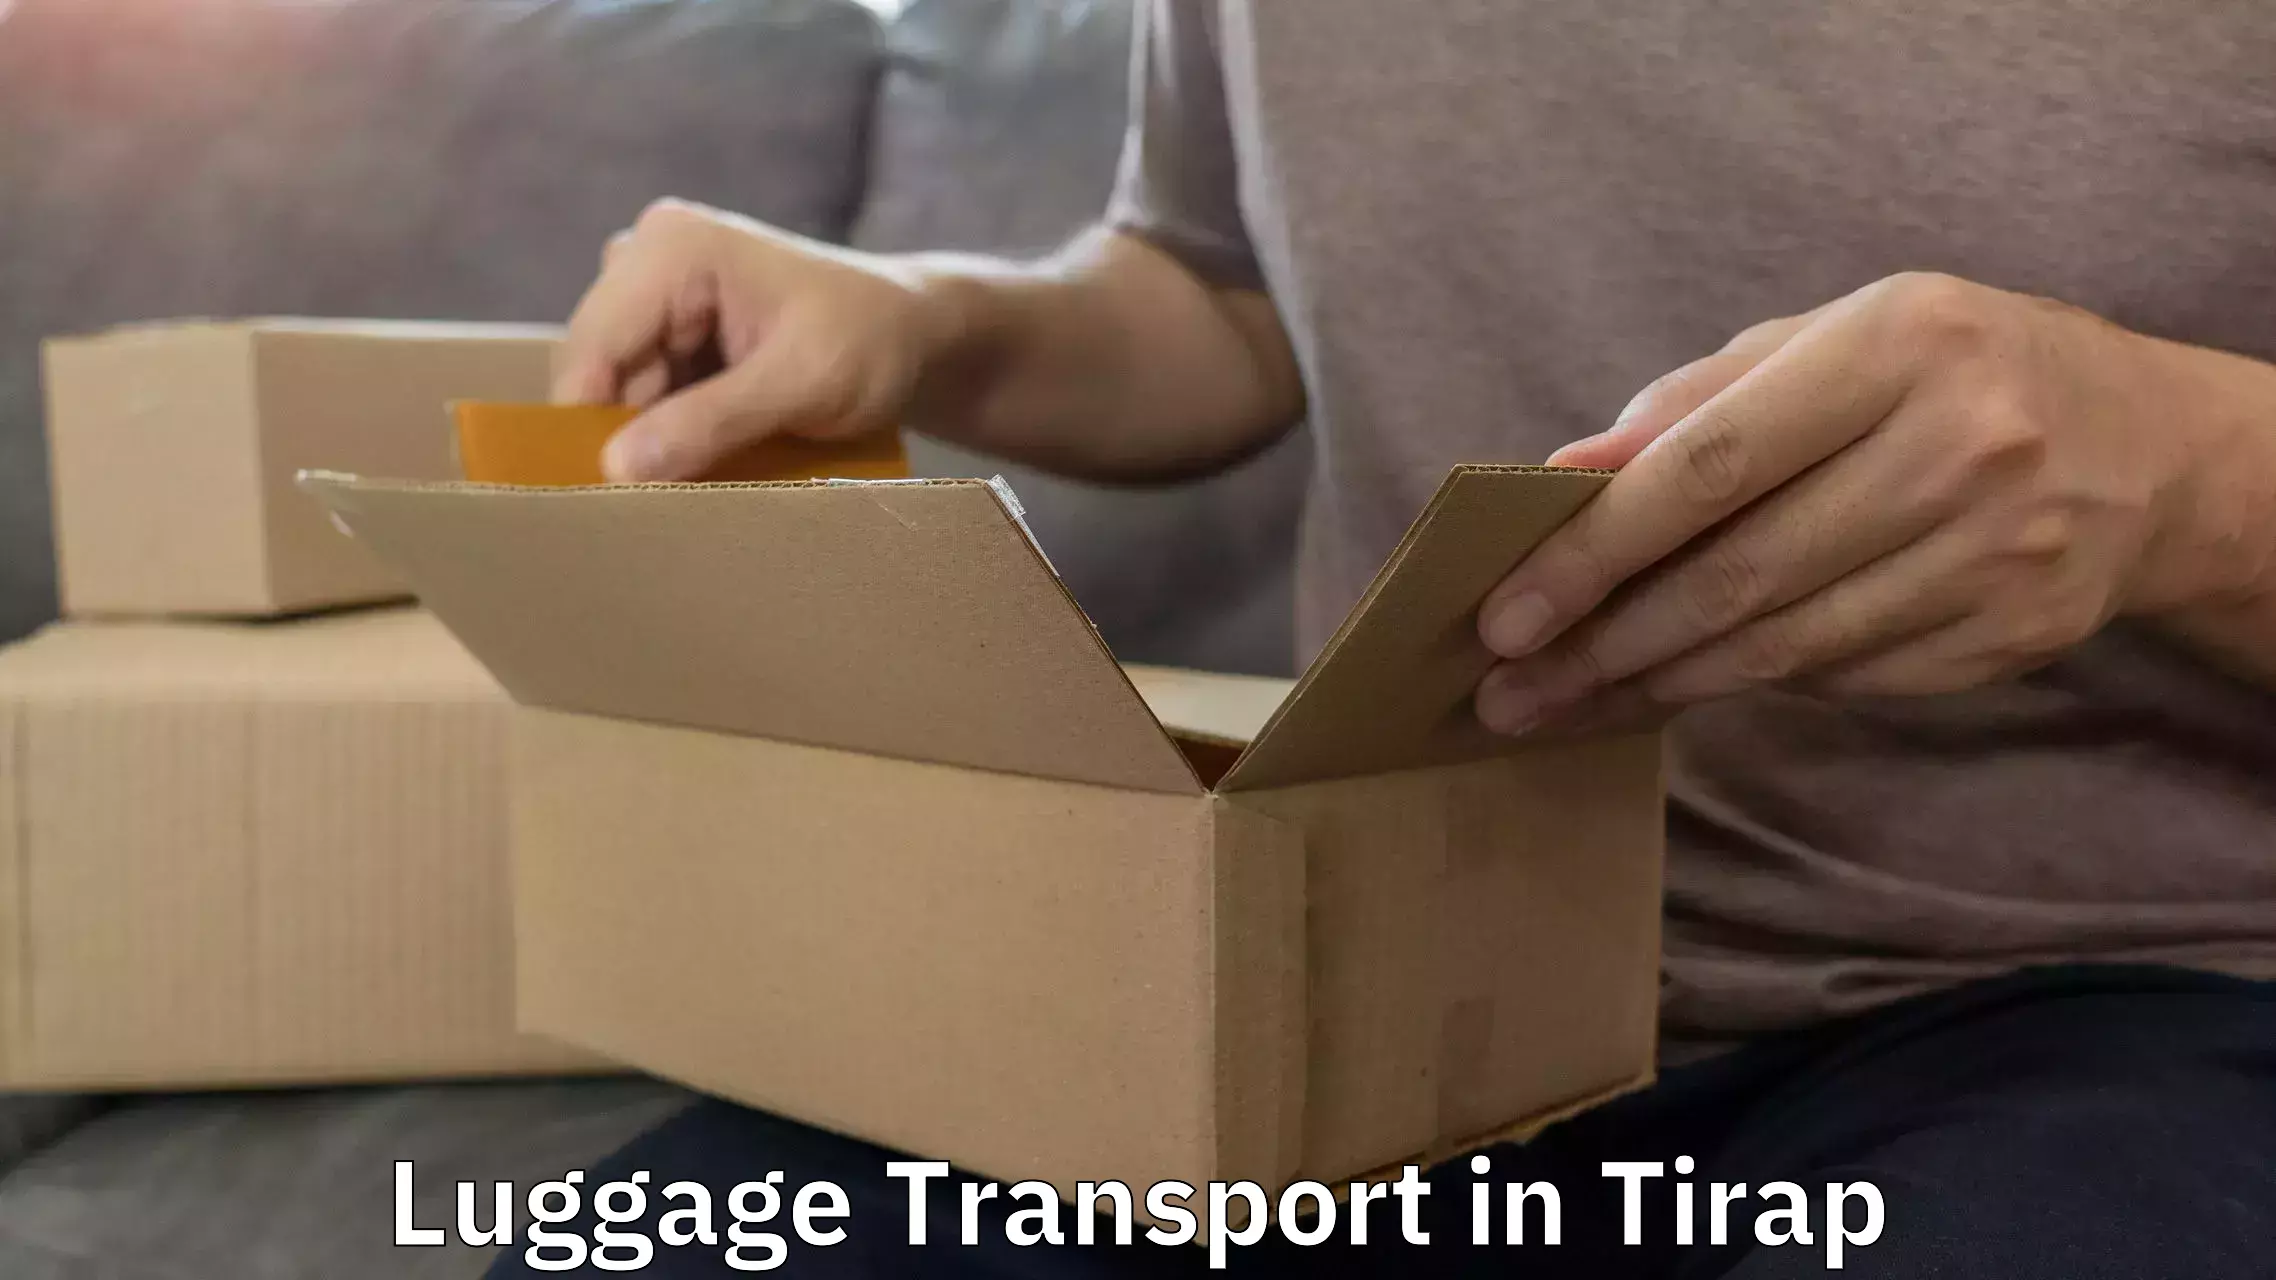 Luggage delivery estimate in Tirap